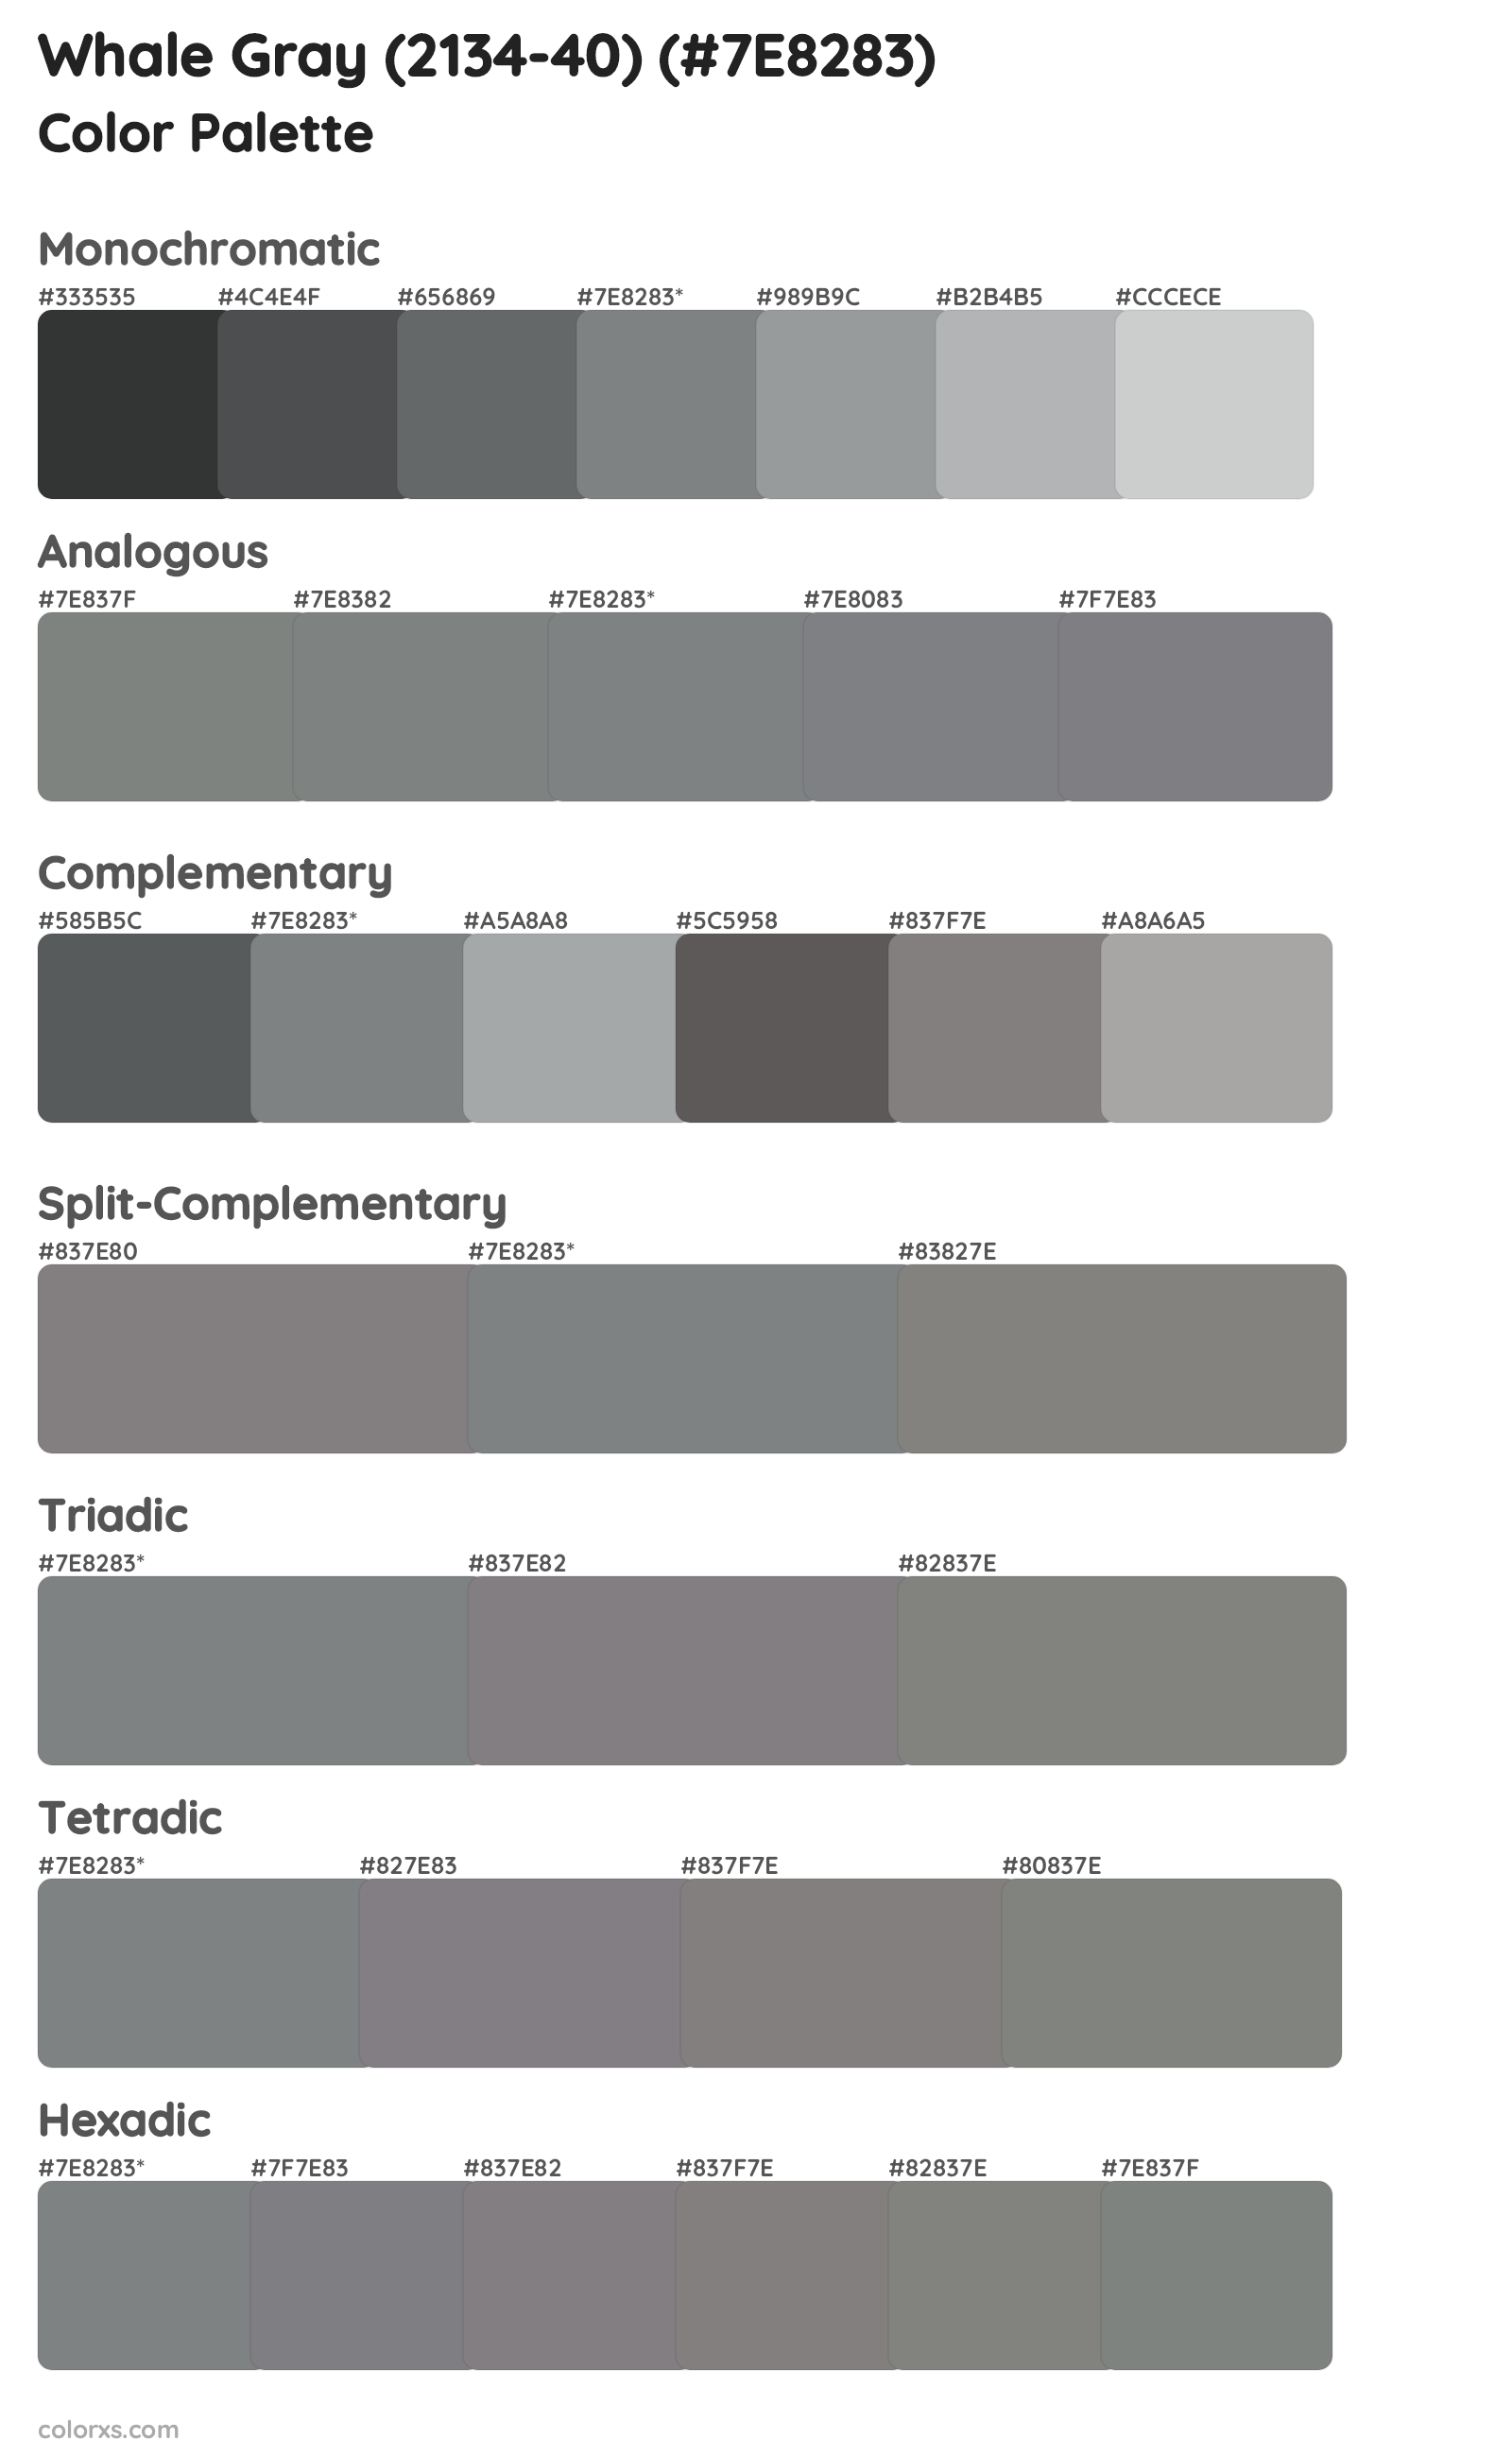 Whale Gray (2134-40) Color Scheme Palettes